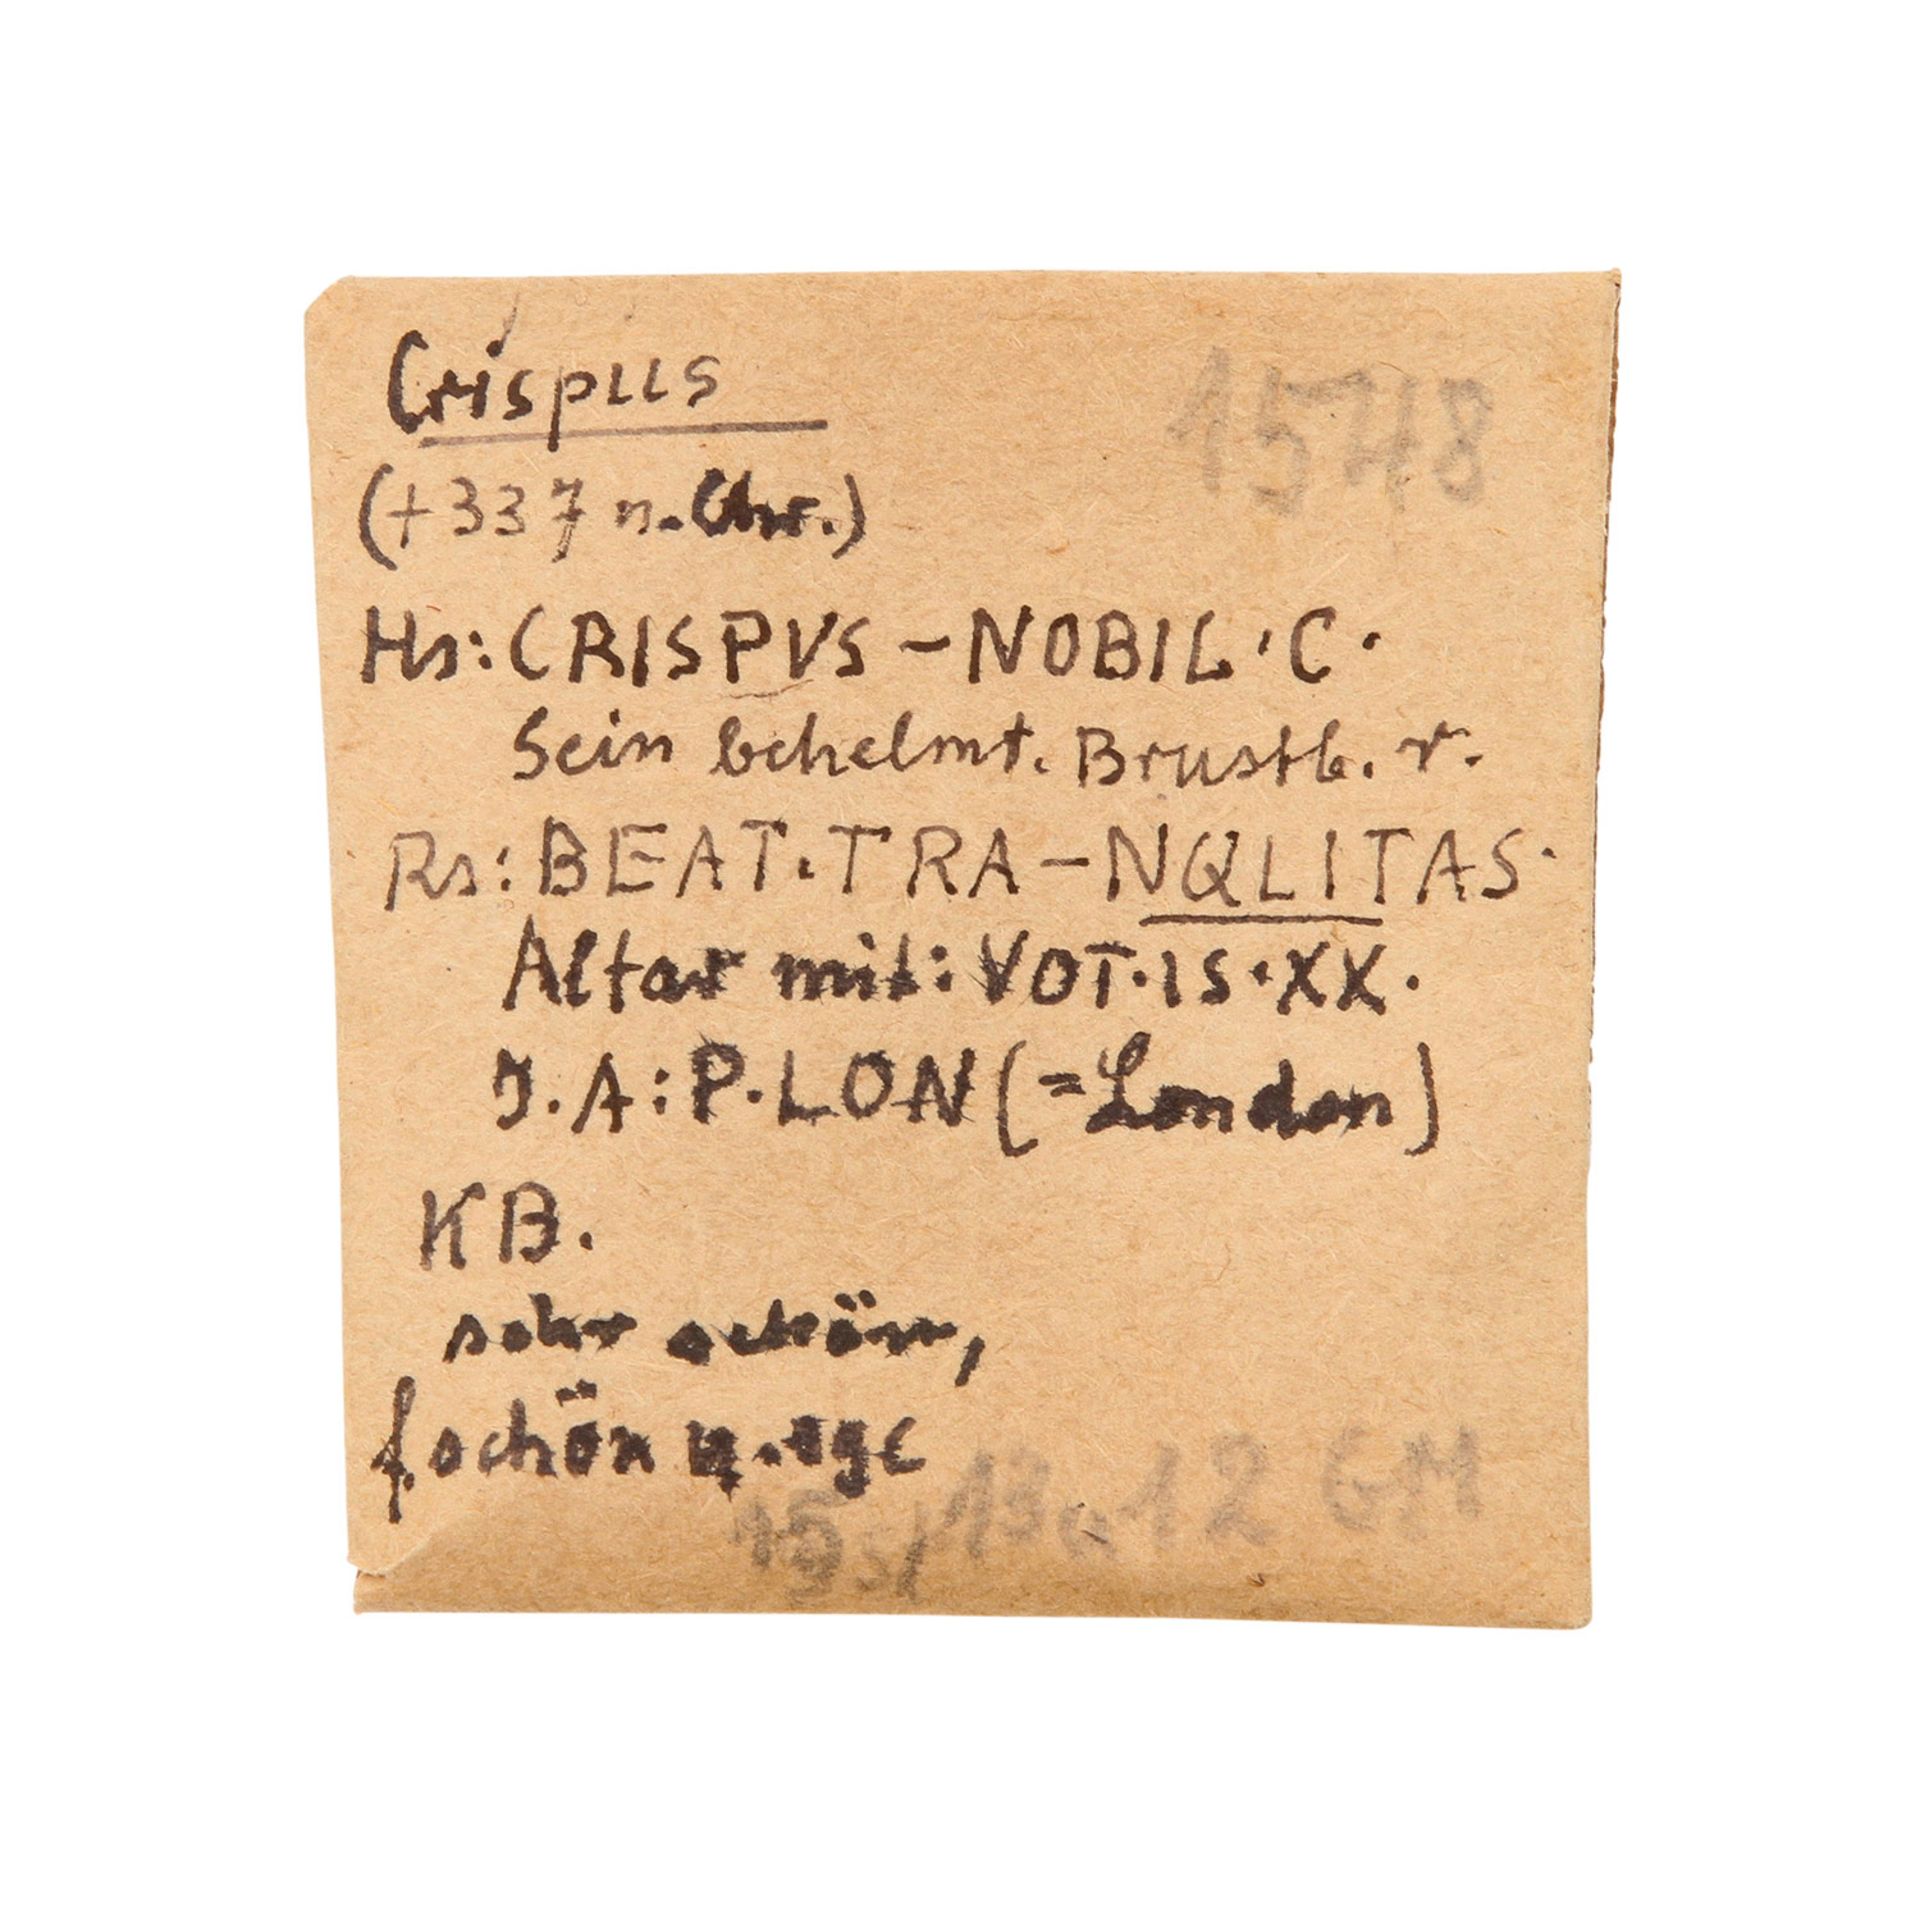 Römisches Kaiserreich - Crispus, London, 4 Follis, P.LON, Globus auf Altar / VOT, mit alter